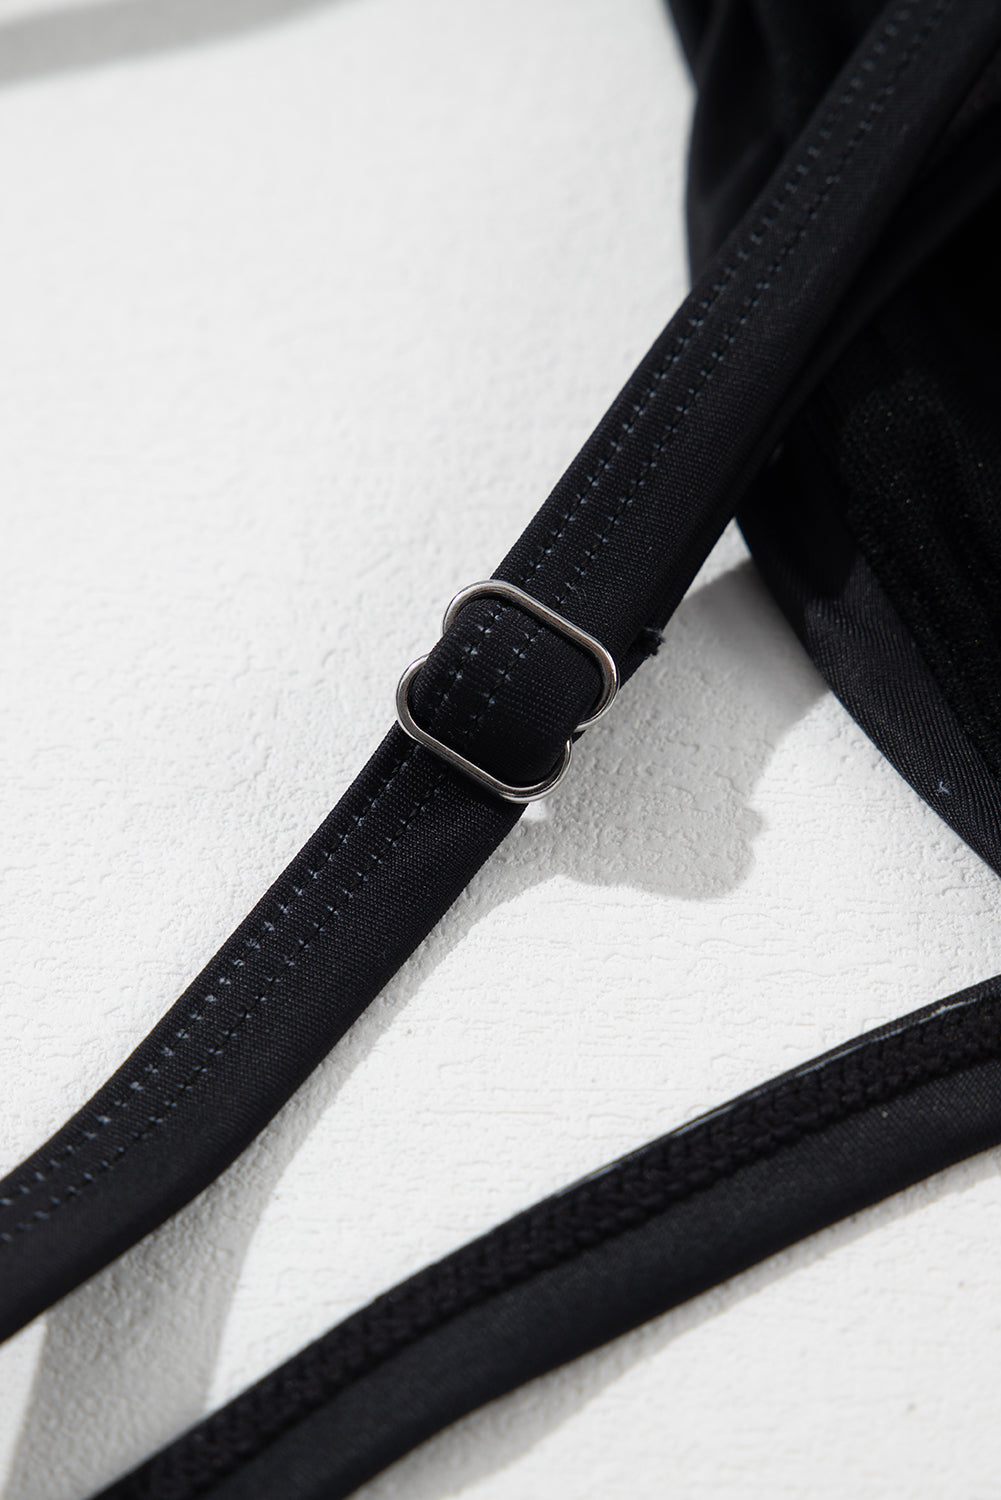 Black Petal Print Crisscross Back Spaghetti Straps Swimsuit